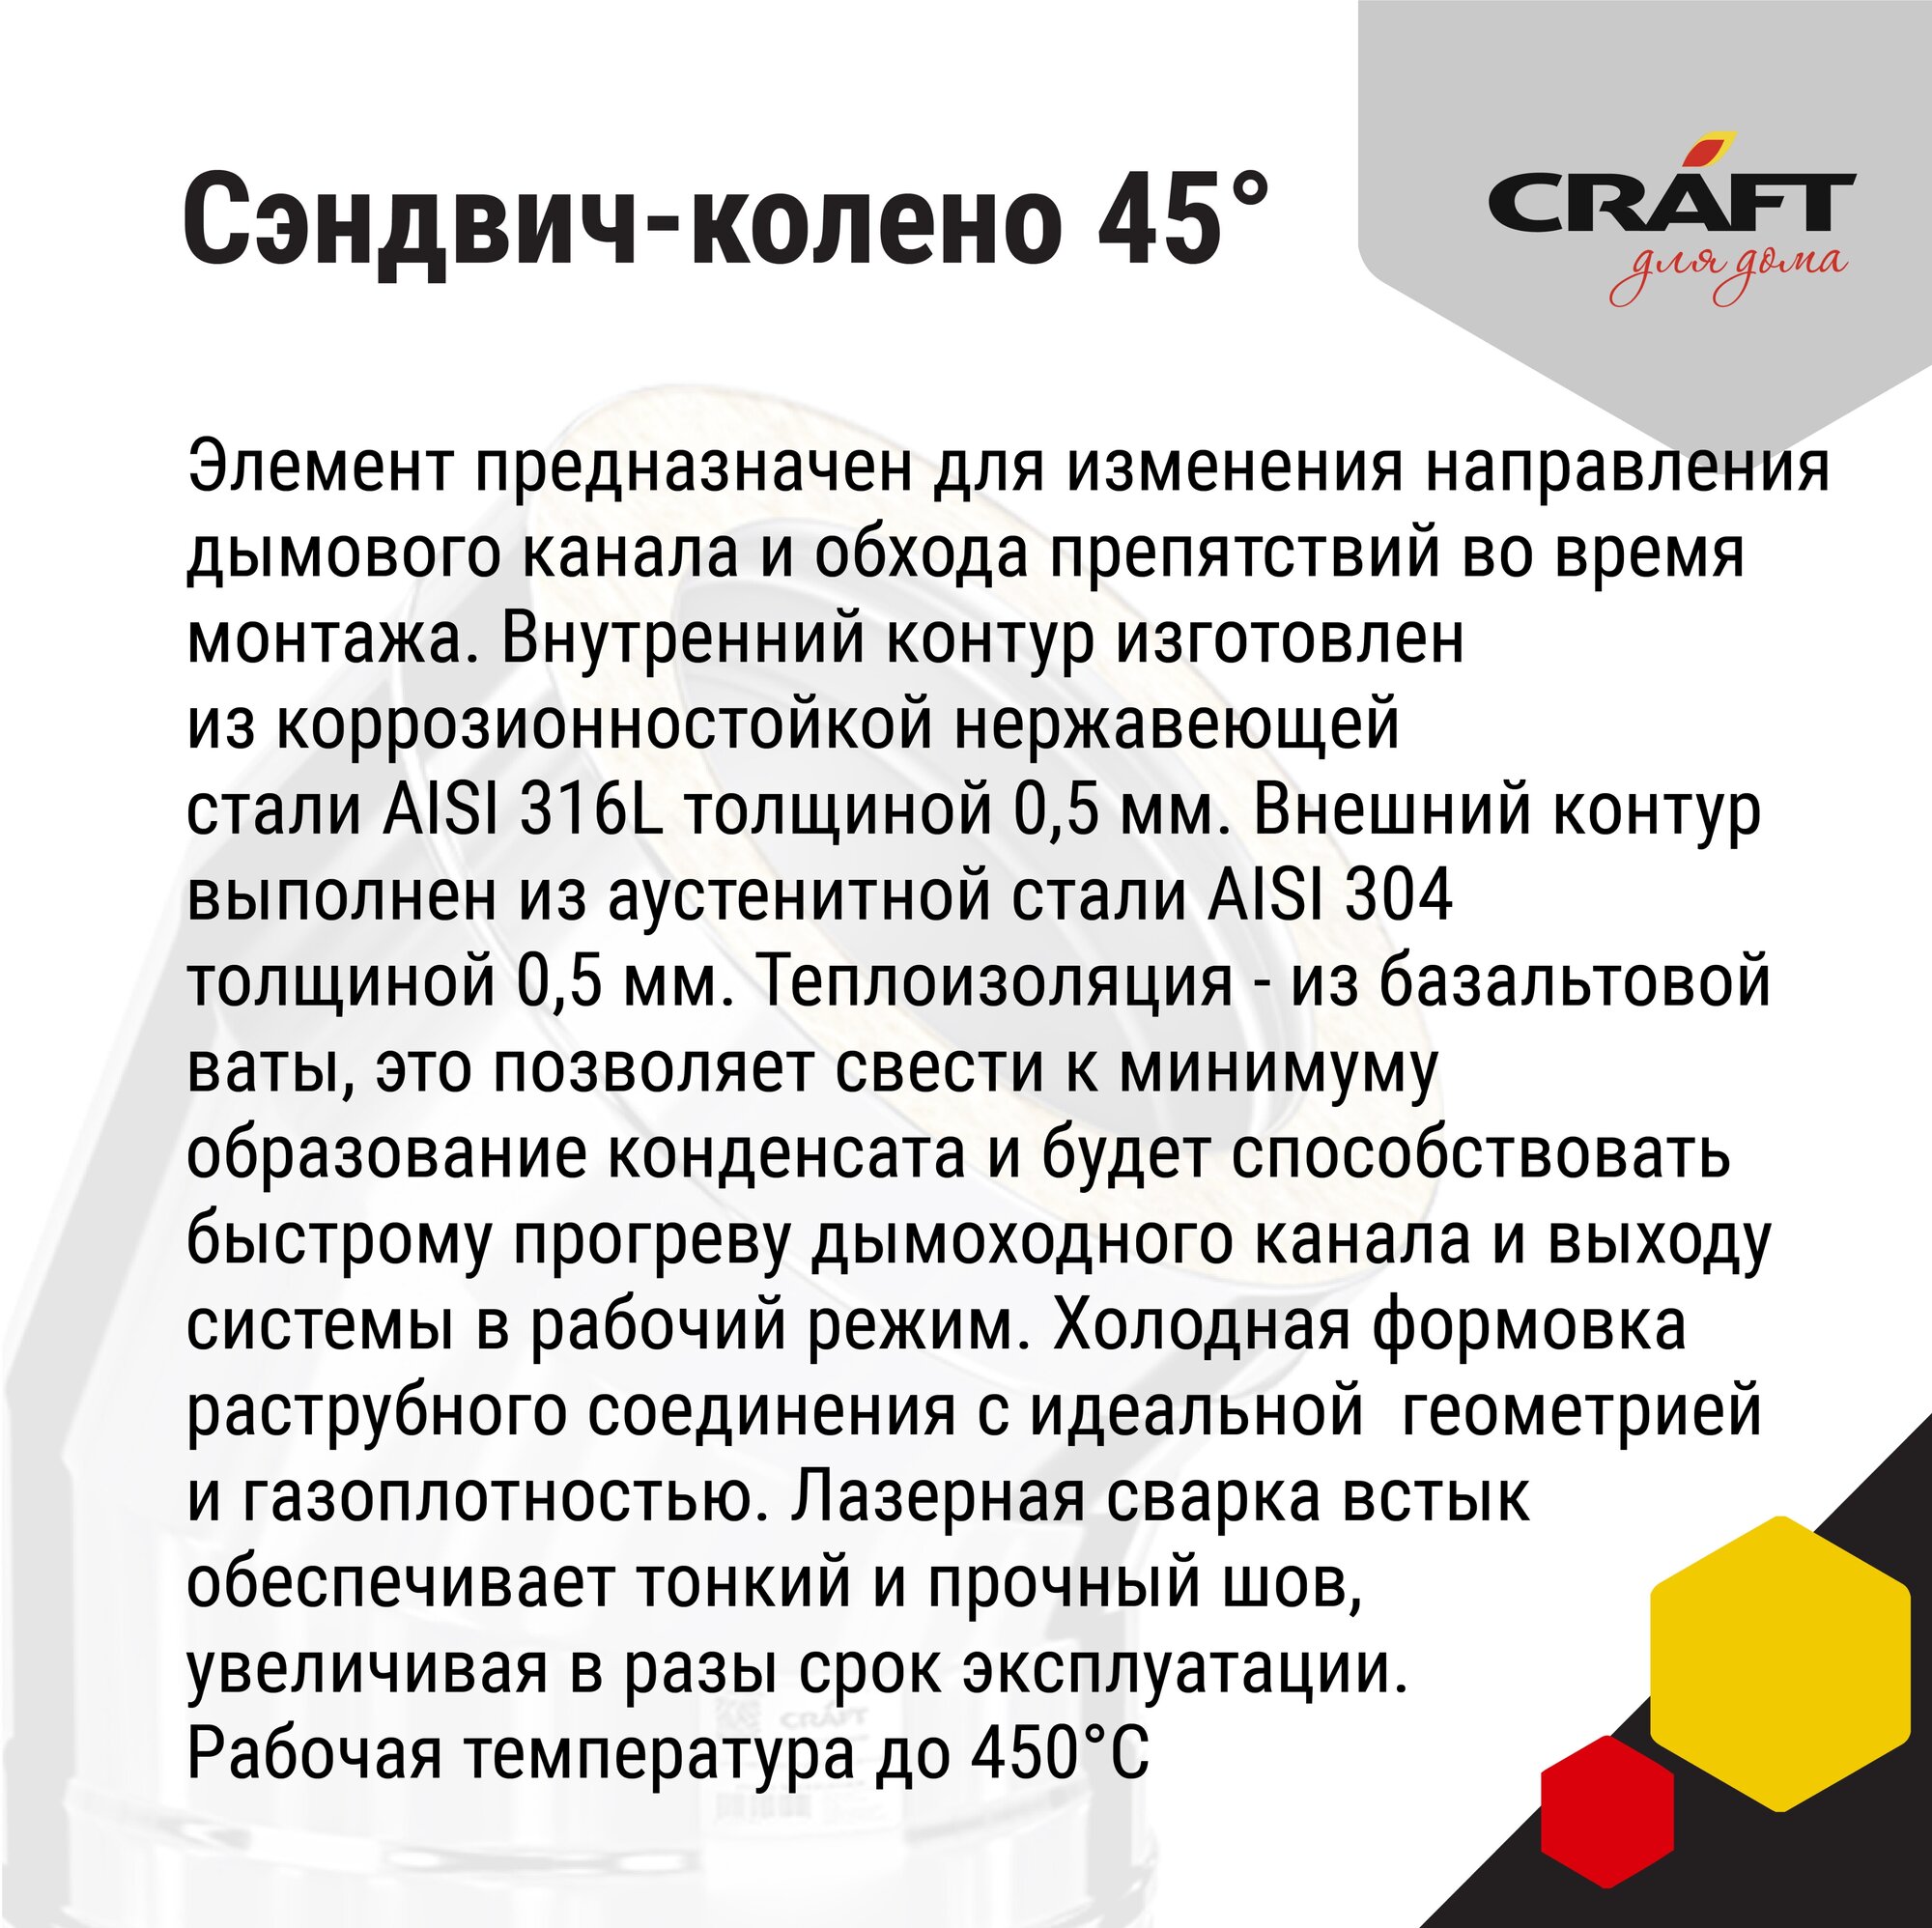 Craft GS-25 сэндвич-колено 45° (316/0,5/304/0,5) Ф200х250 - фотография № 4